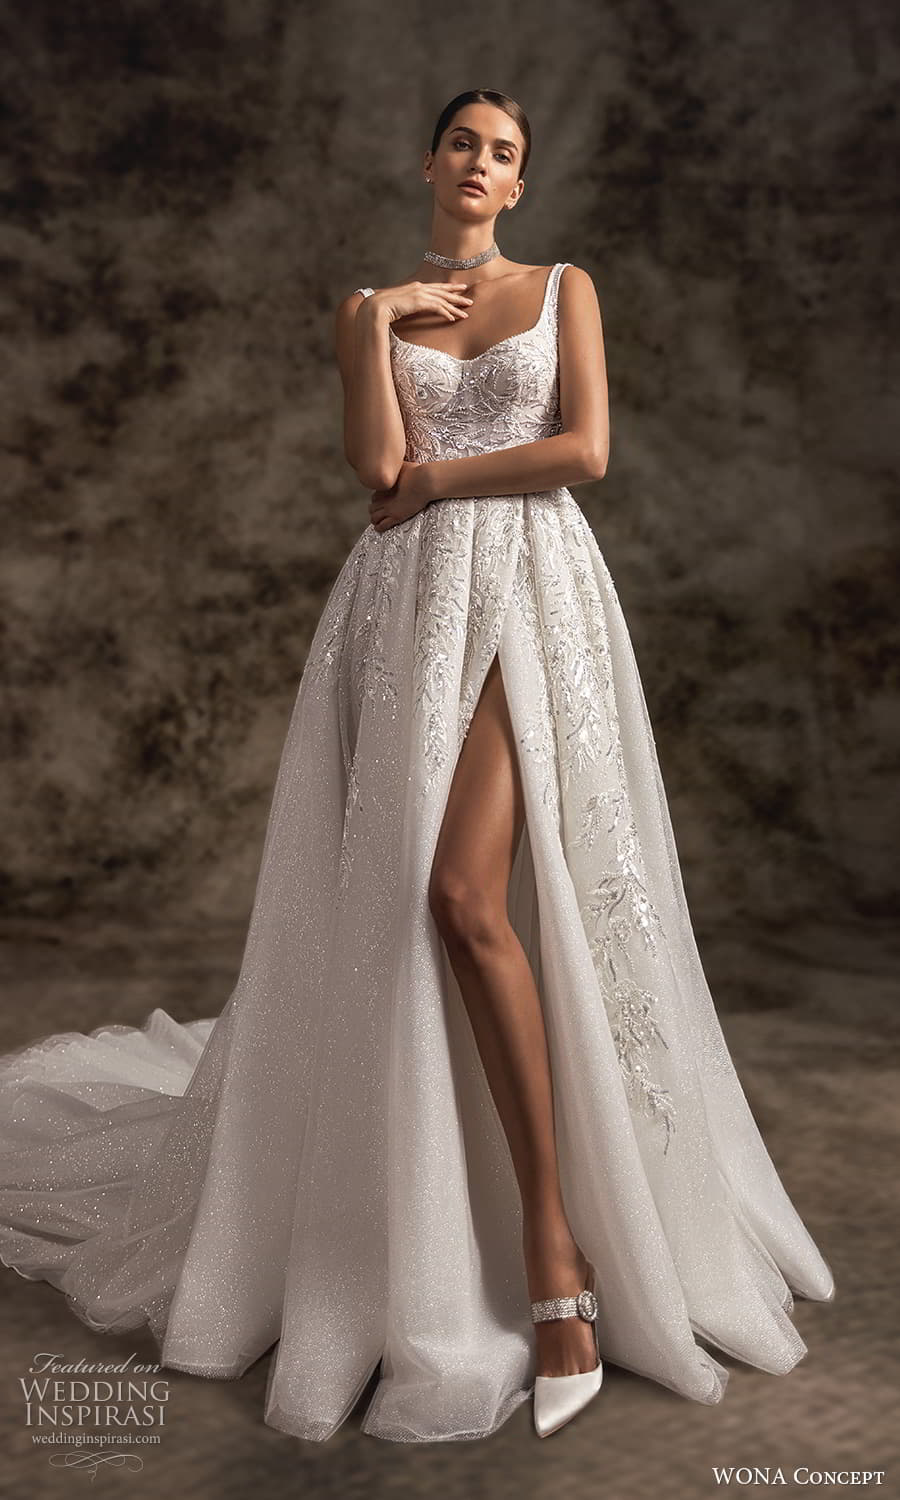 First Look: Wona Concept 2023 Wedding Dresses — “Notte d'Opera